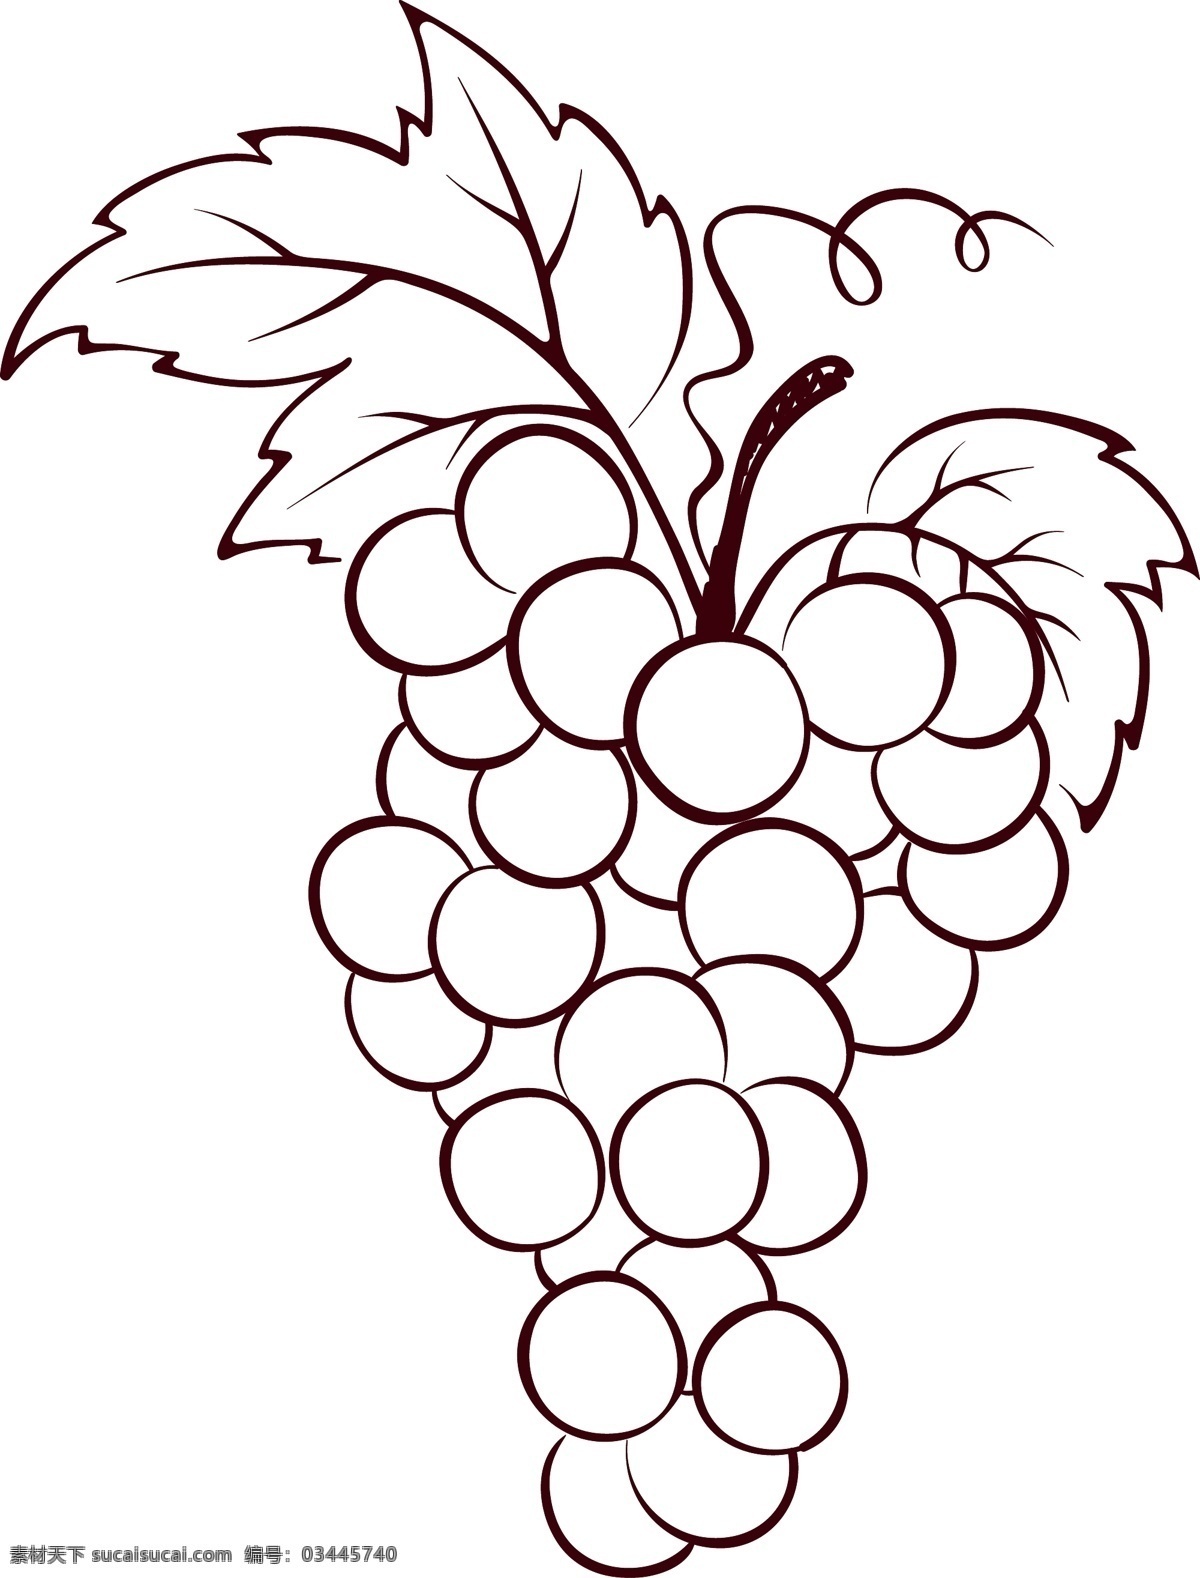 红酒 葡萄酒 串 葡萄 矢量图 手绘 一串葡萄 平面设计素材